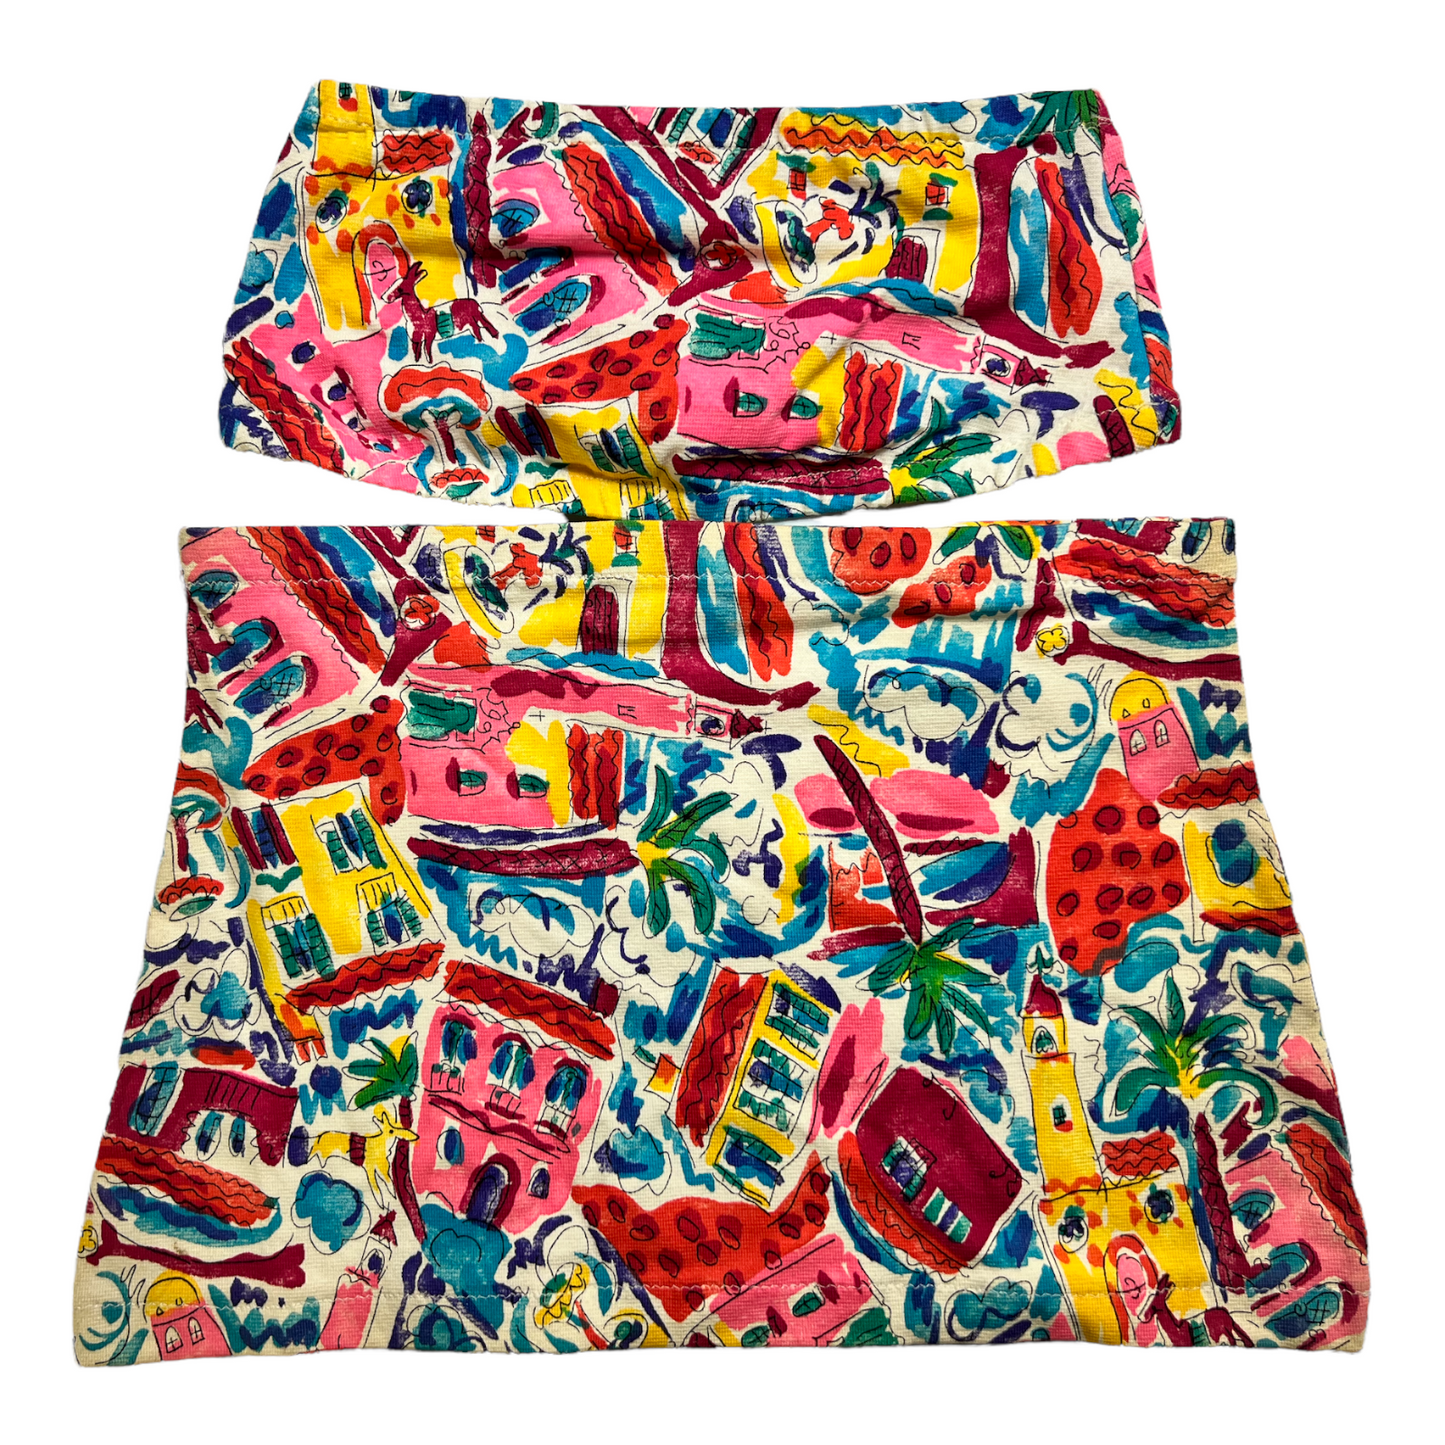 New Multicolor Fancy Breast Cover & Skirt set size S (Swim Wear)